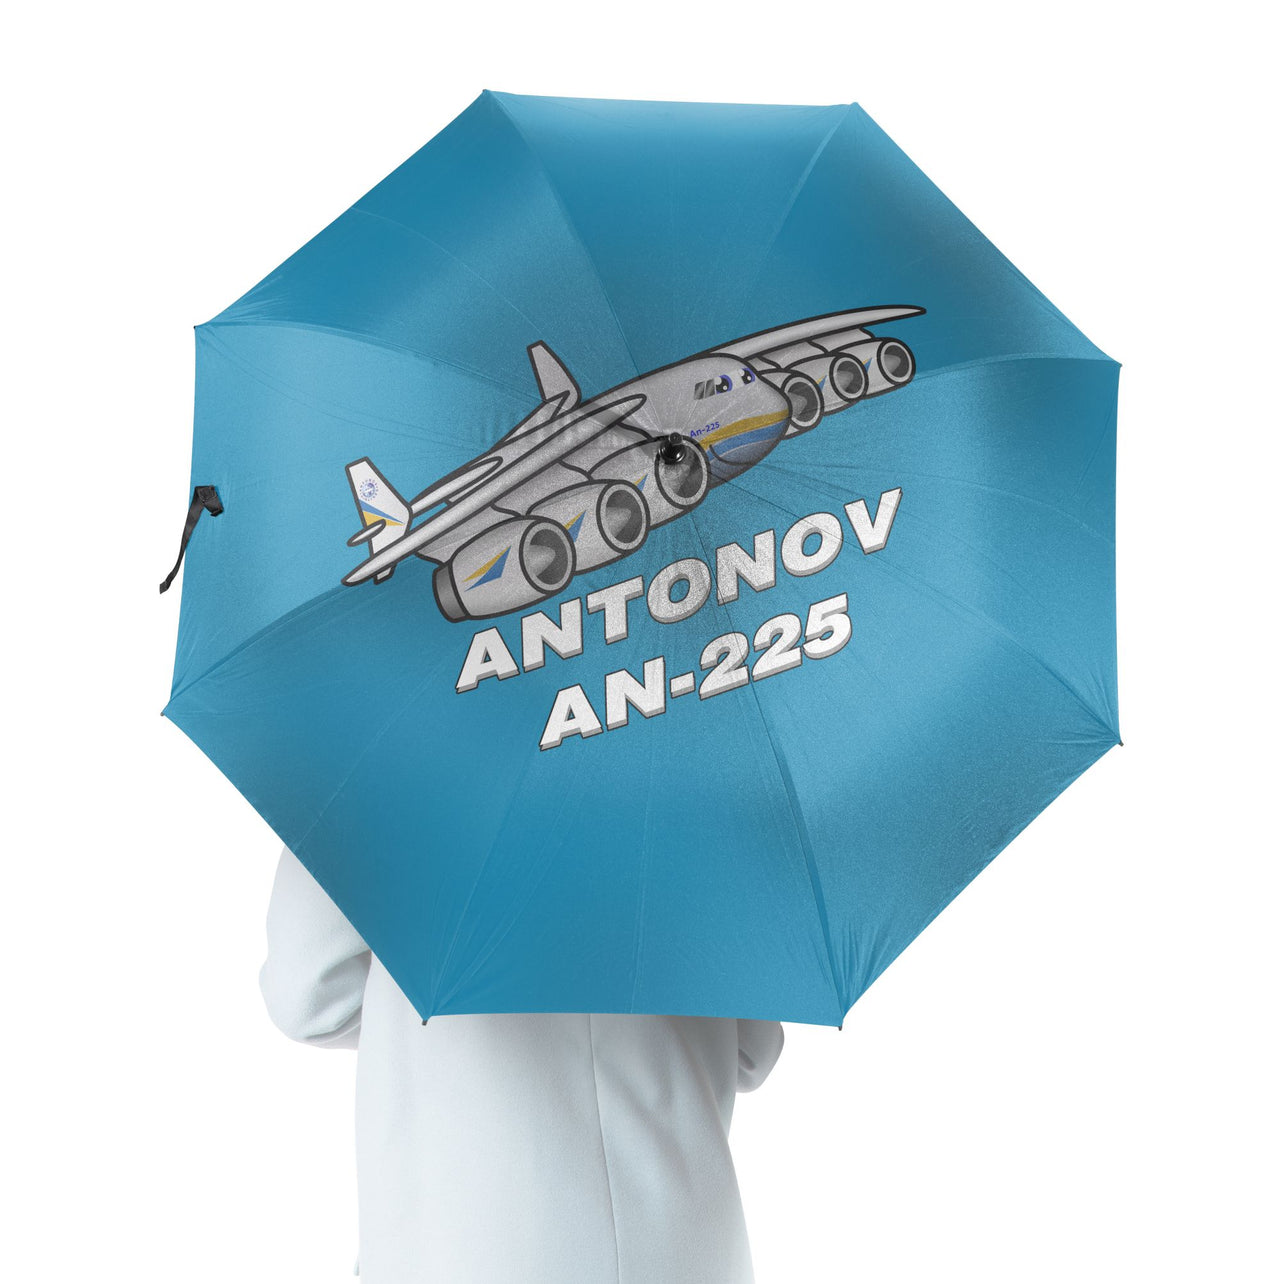 Antonov AN-225 (25) Designed Umbrella